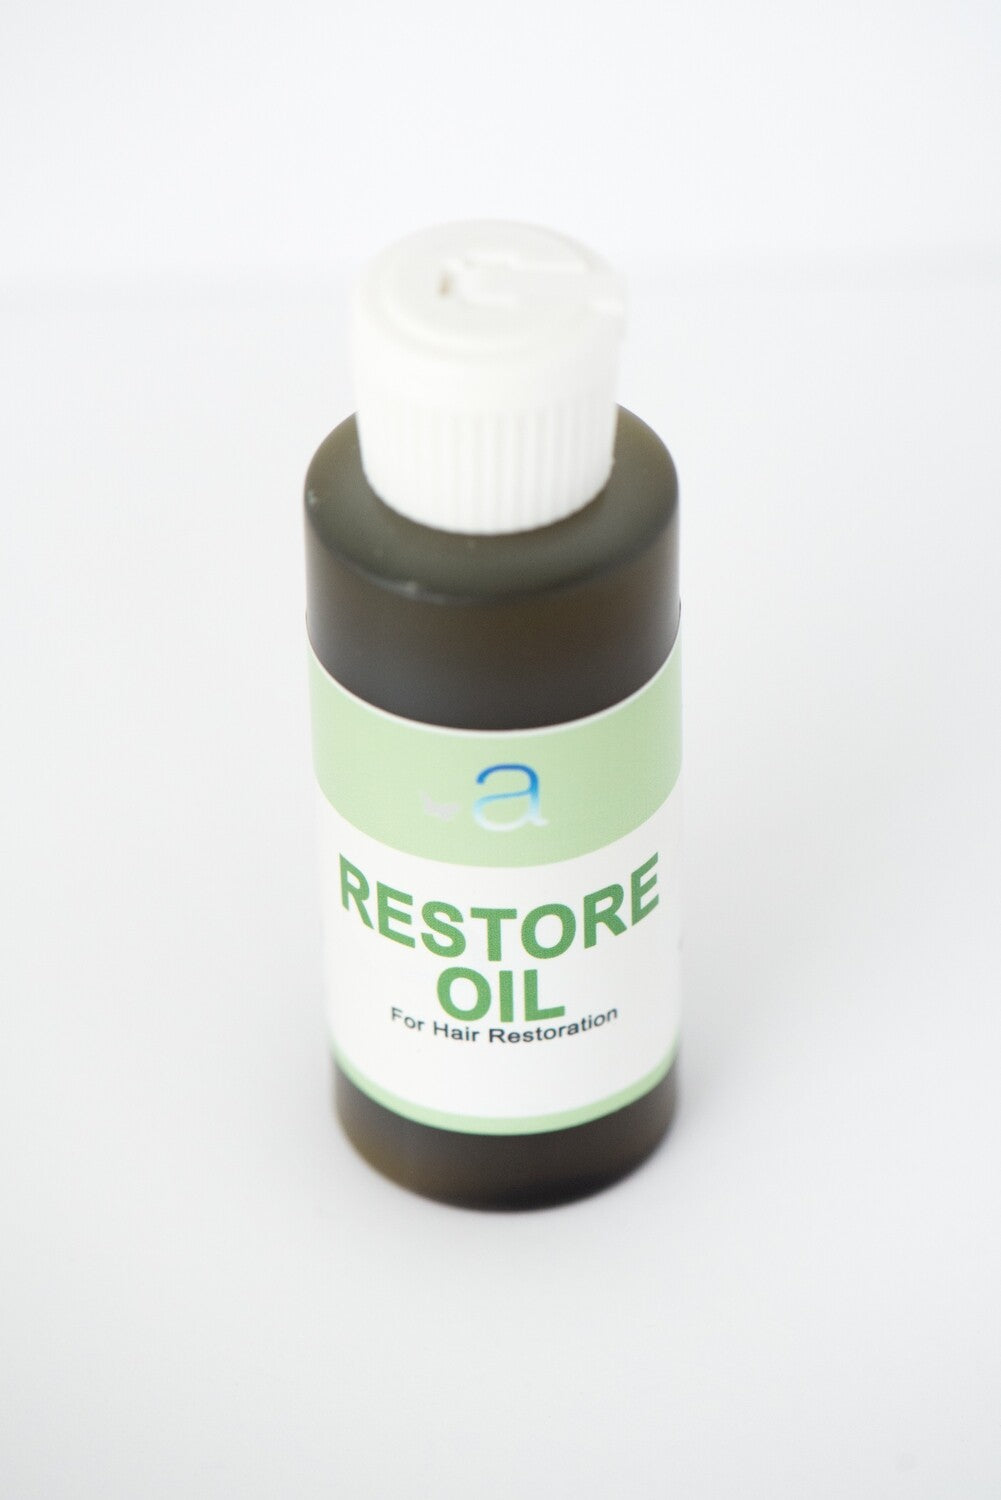 Restore Oil for Hair Restoration